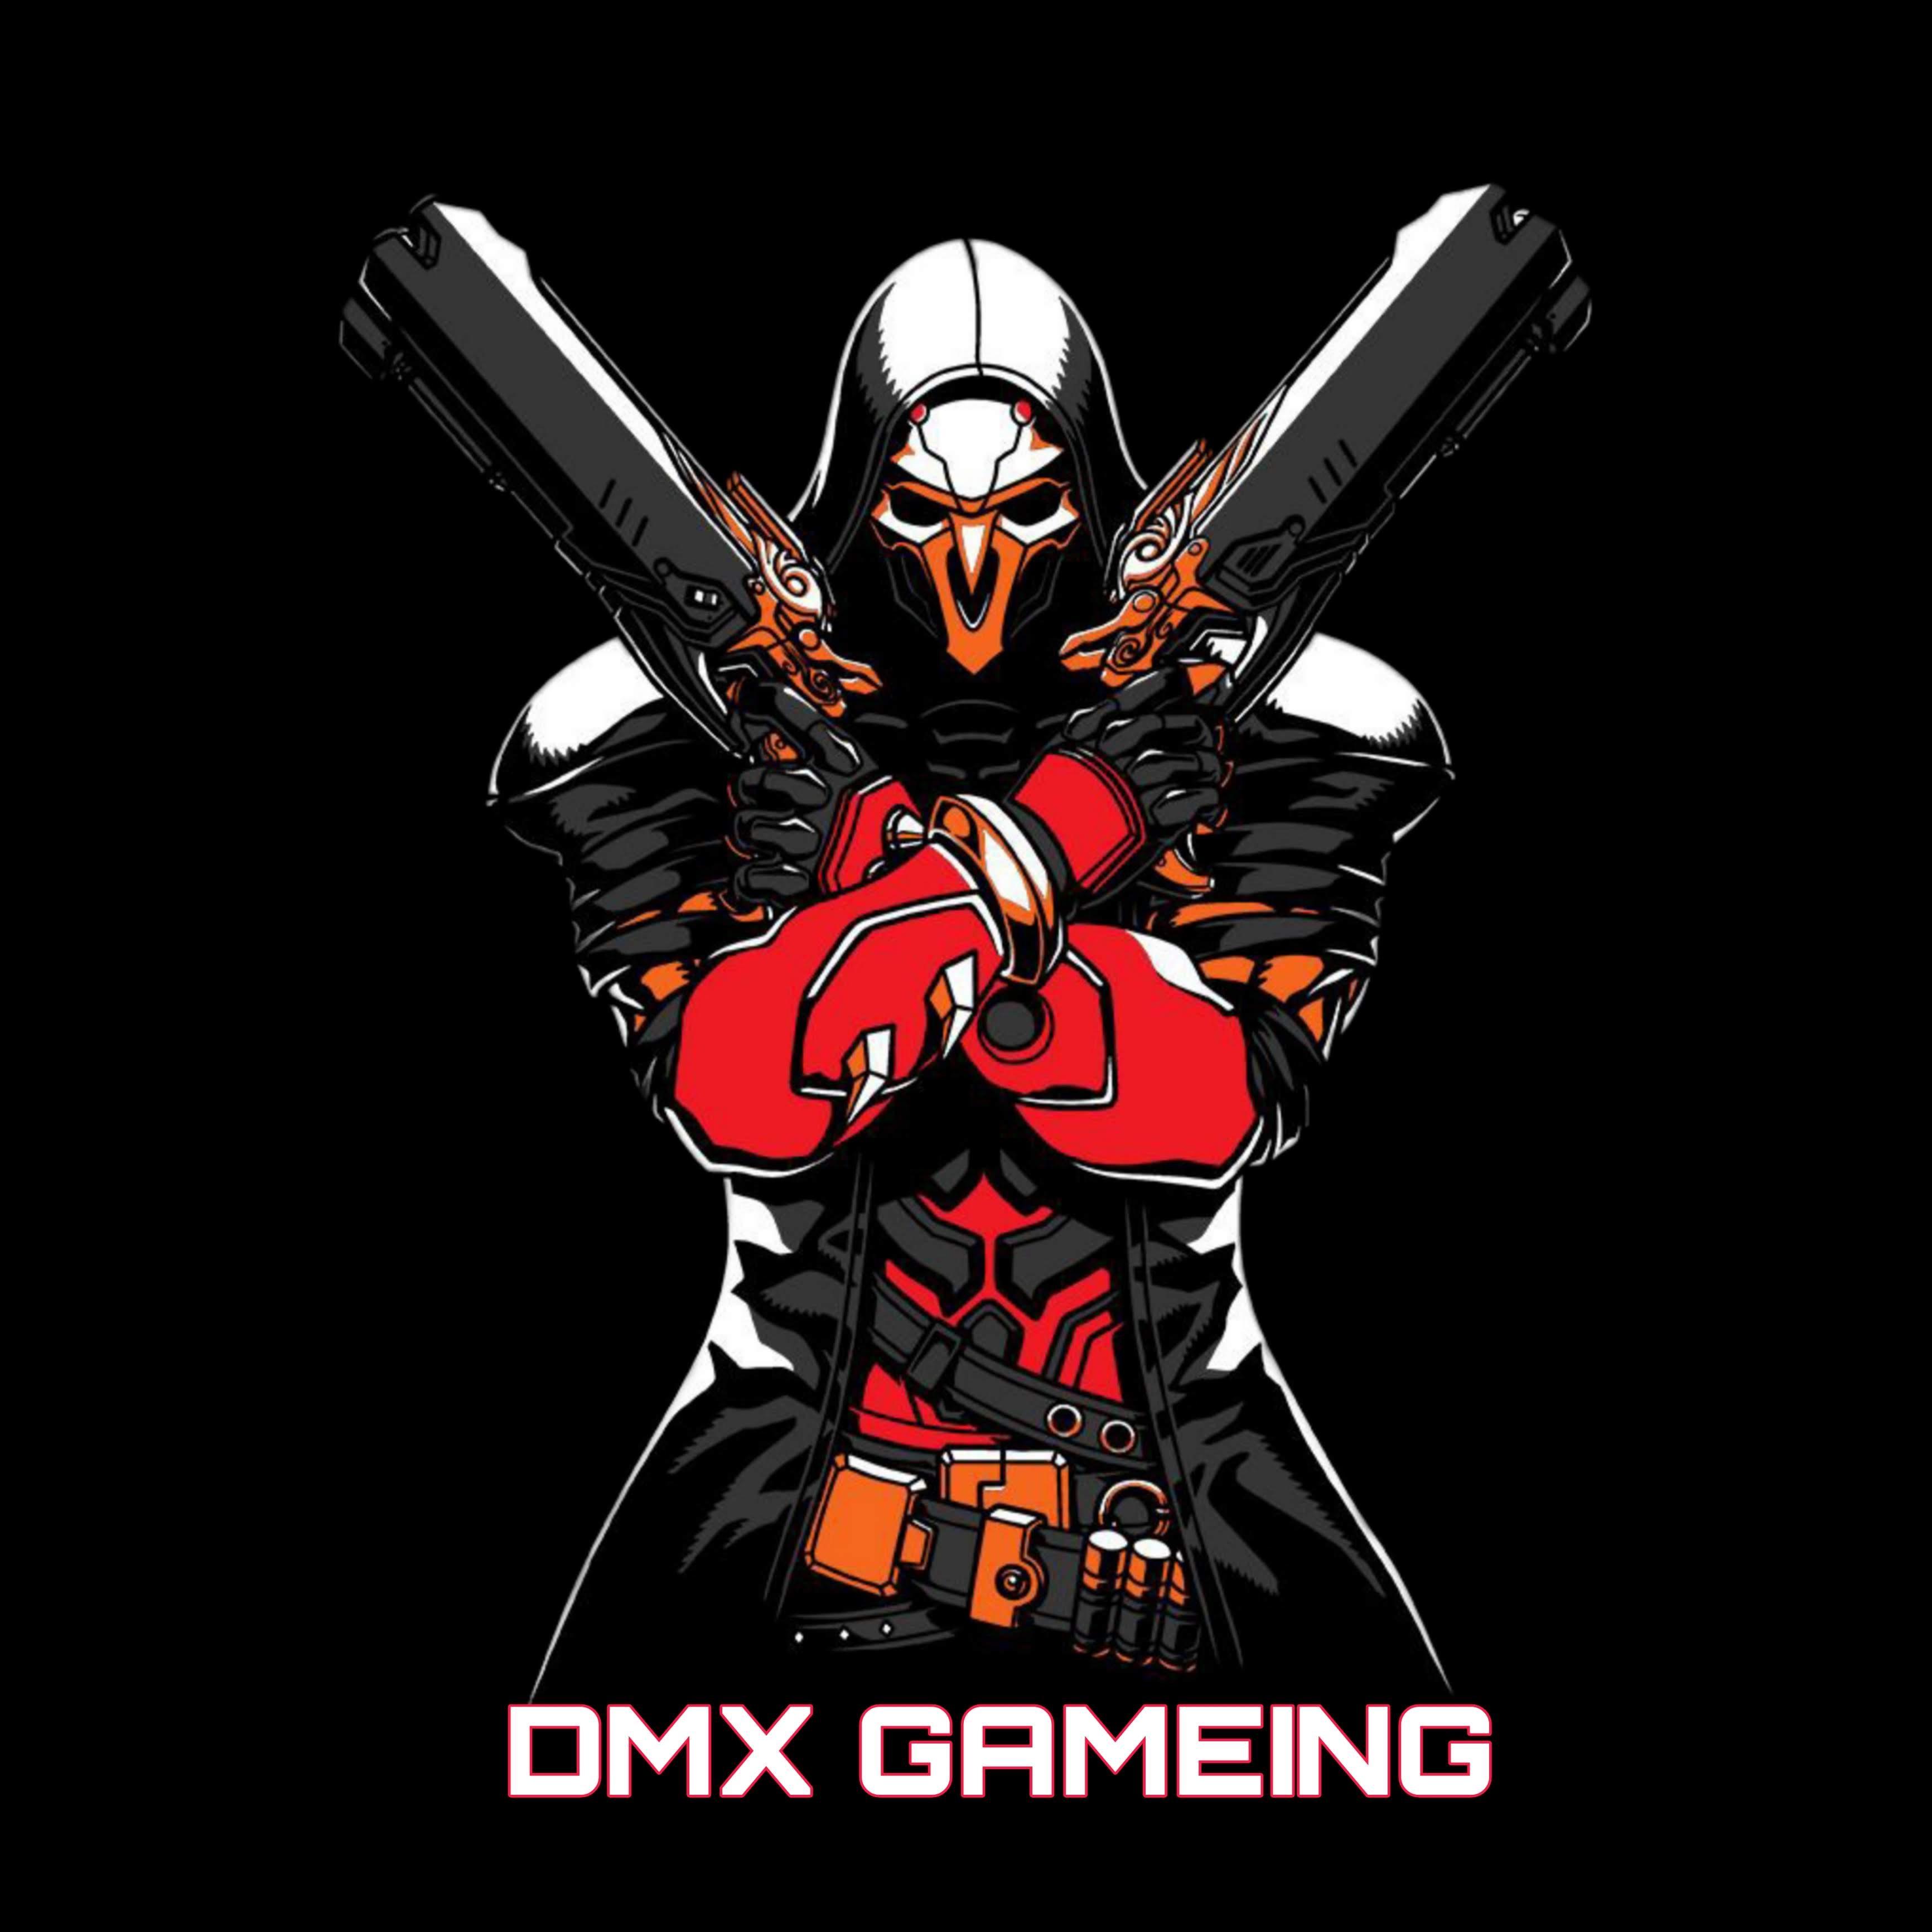 DMX GAMING